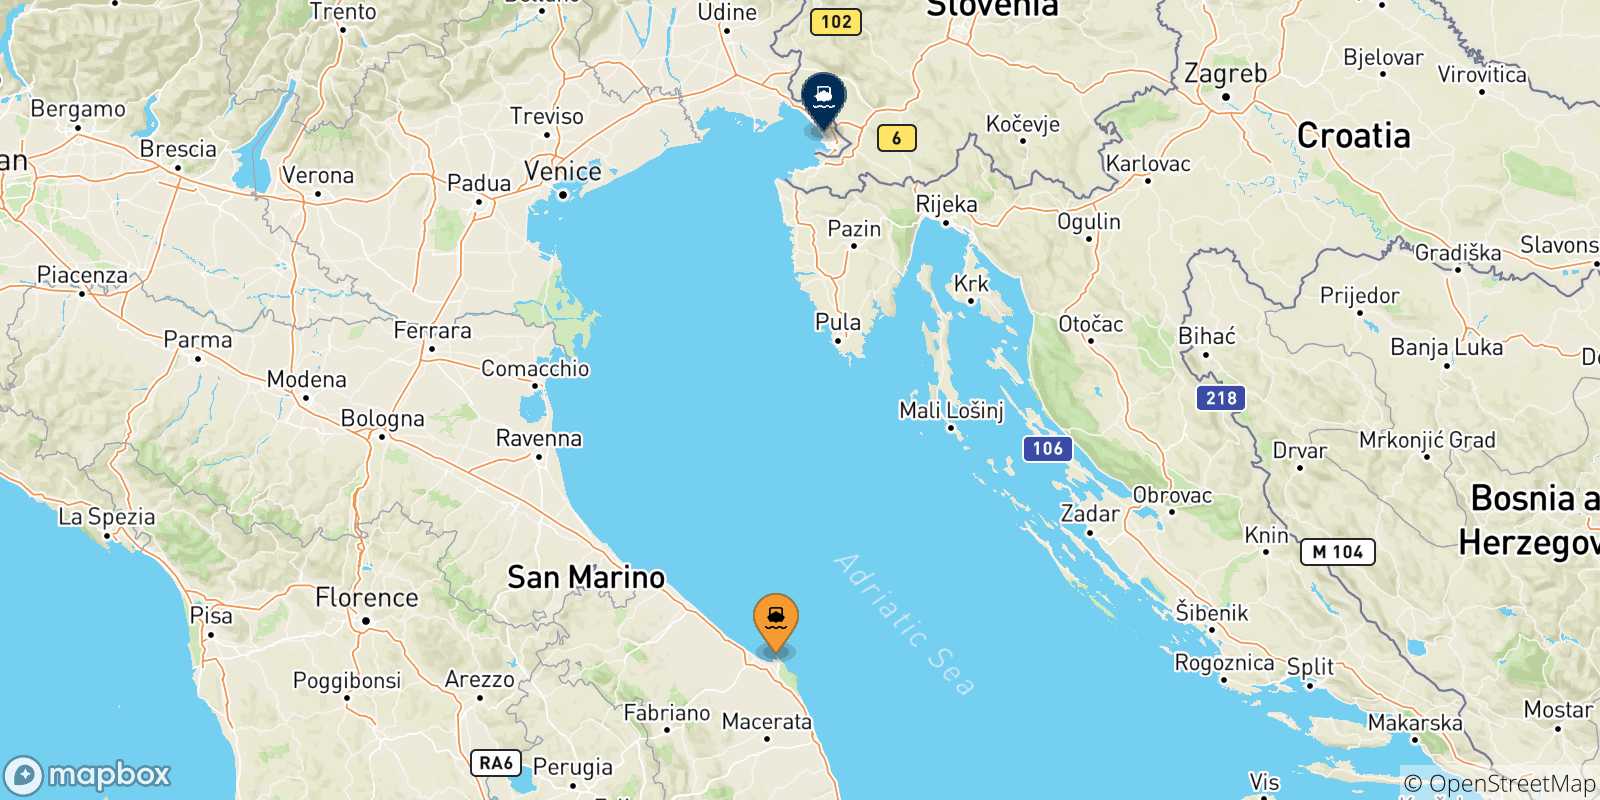 Mappa delle possibili rotte tra l'Italia e Trieste